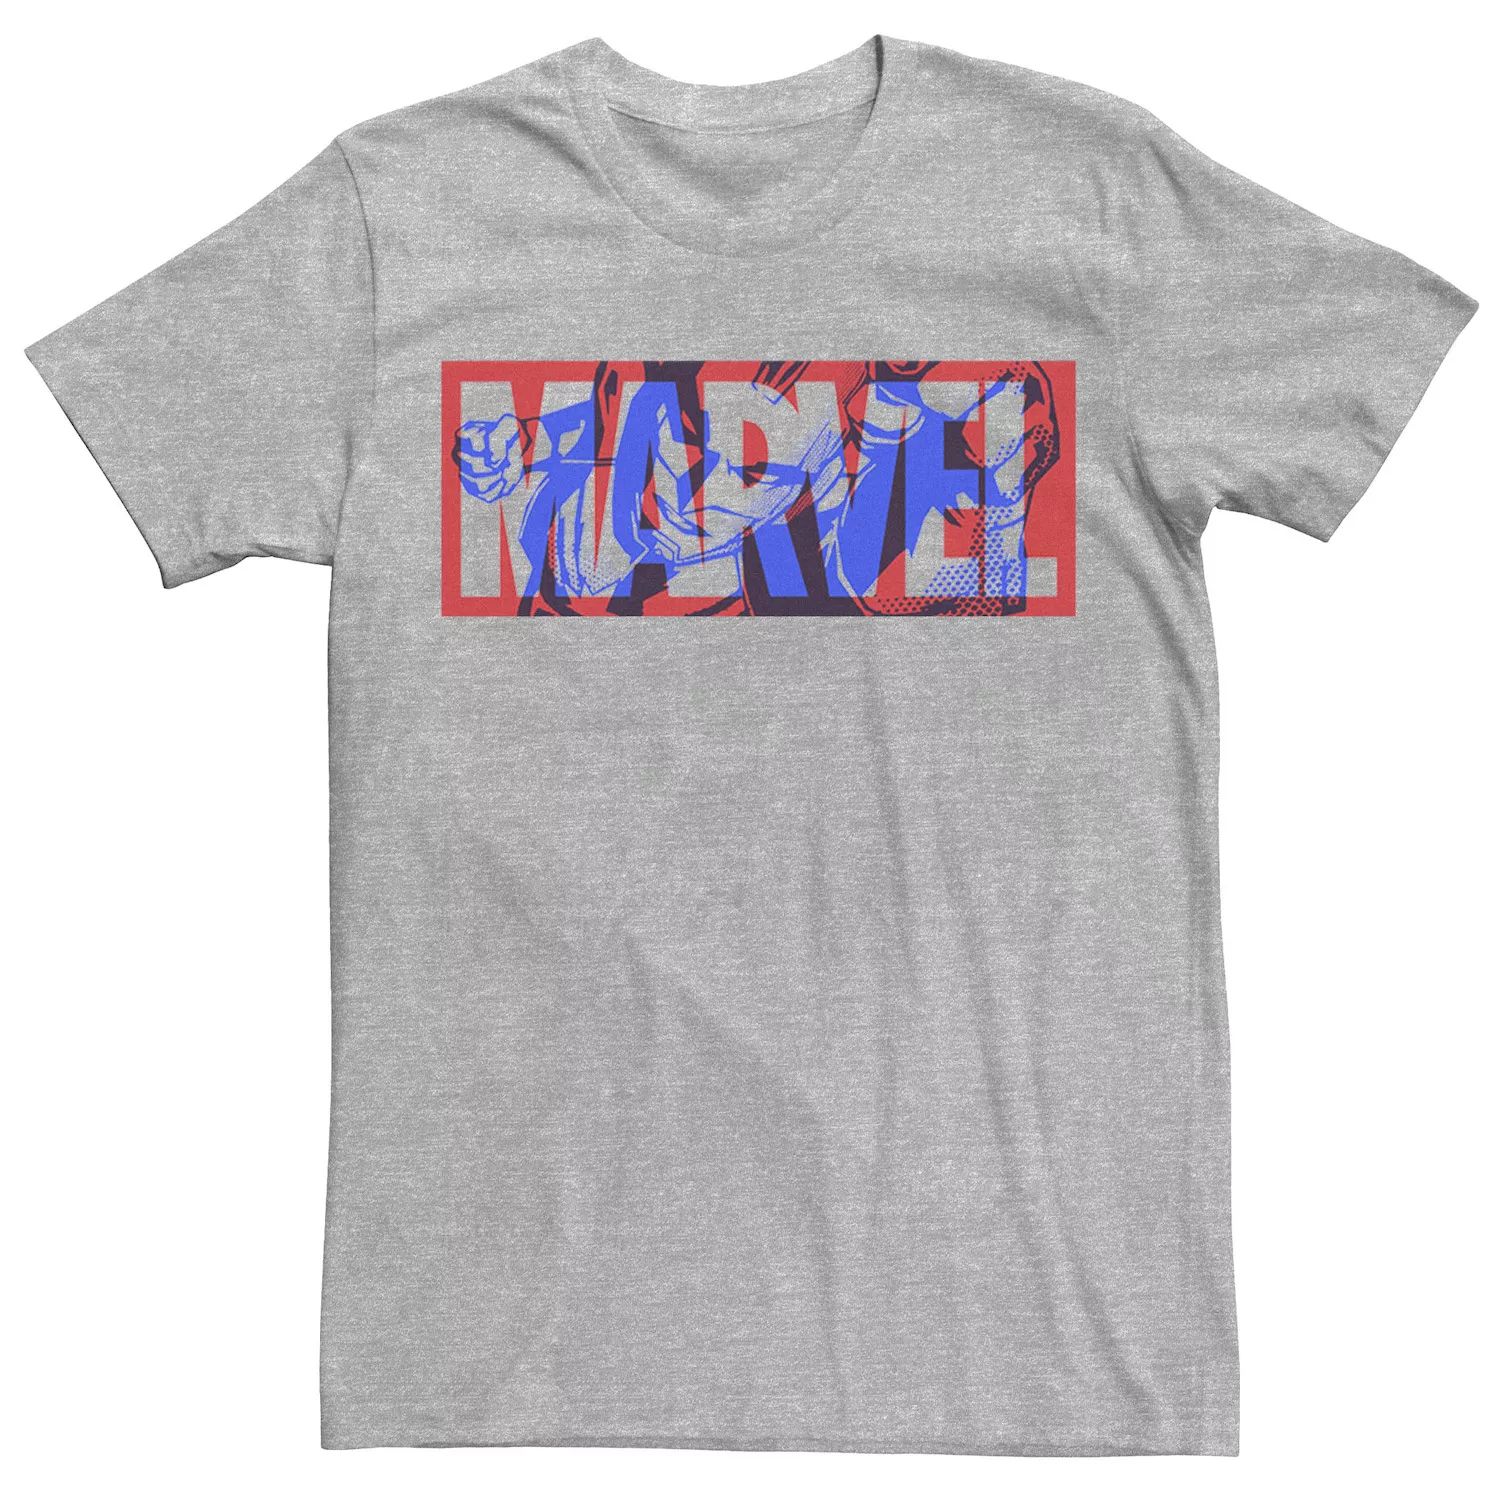 мужская классическая футболка с графическим логотипом marvel Мужская большая классическая футболка с графическим логотипом Captain Marvel